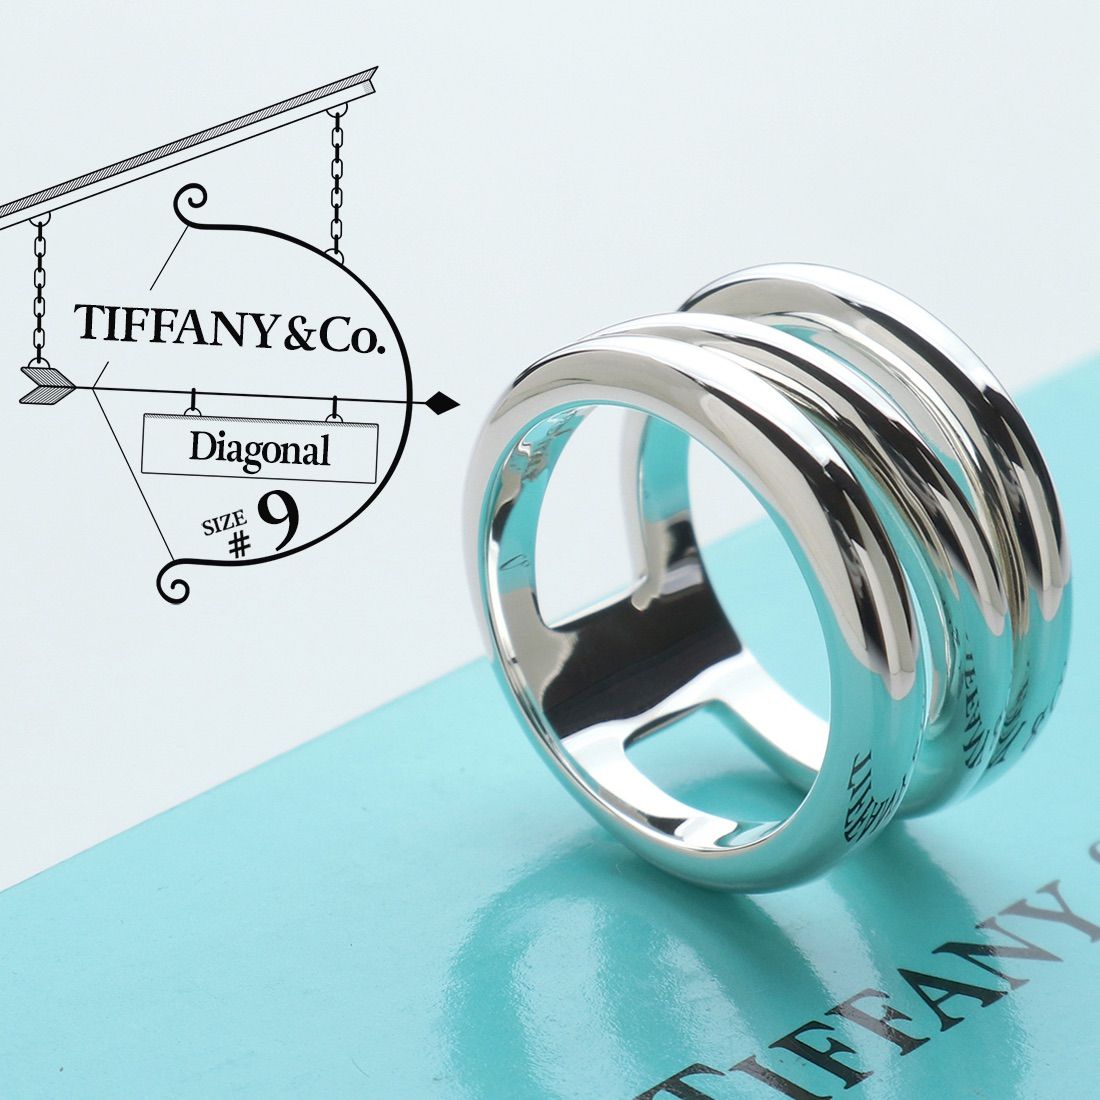 極美品 TIFFANY&Co. ティファニー ダイアゴナル リング 9号 90’s ヴィンテージ スパイラル ワイド スターリング シルバー AG  925 指輪